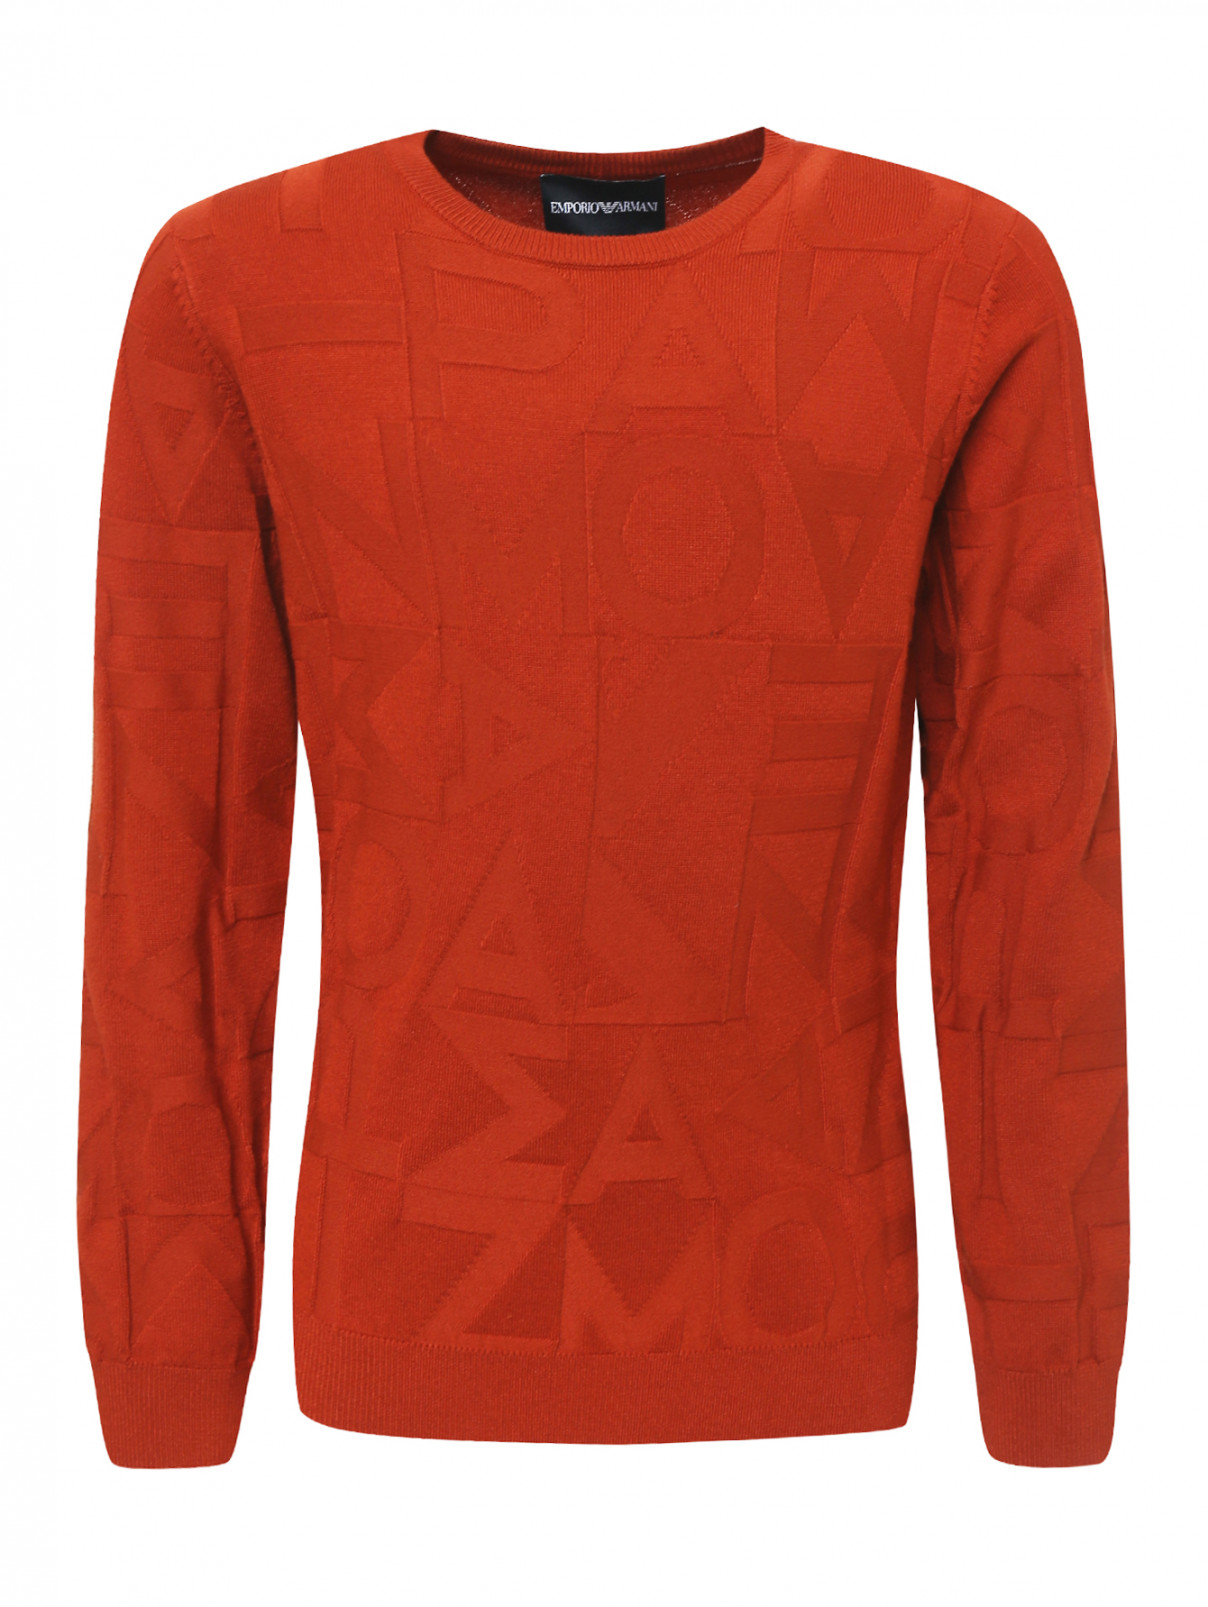 Джемпер трикотажный фактурной вязки Emporio Armani  –  Общий вид  – Цвет:  Оранжевый